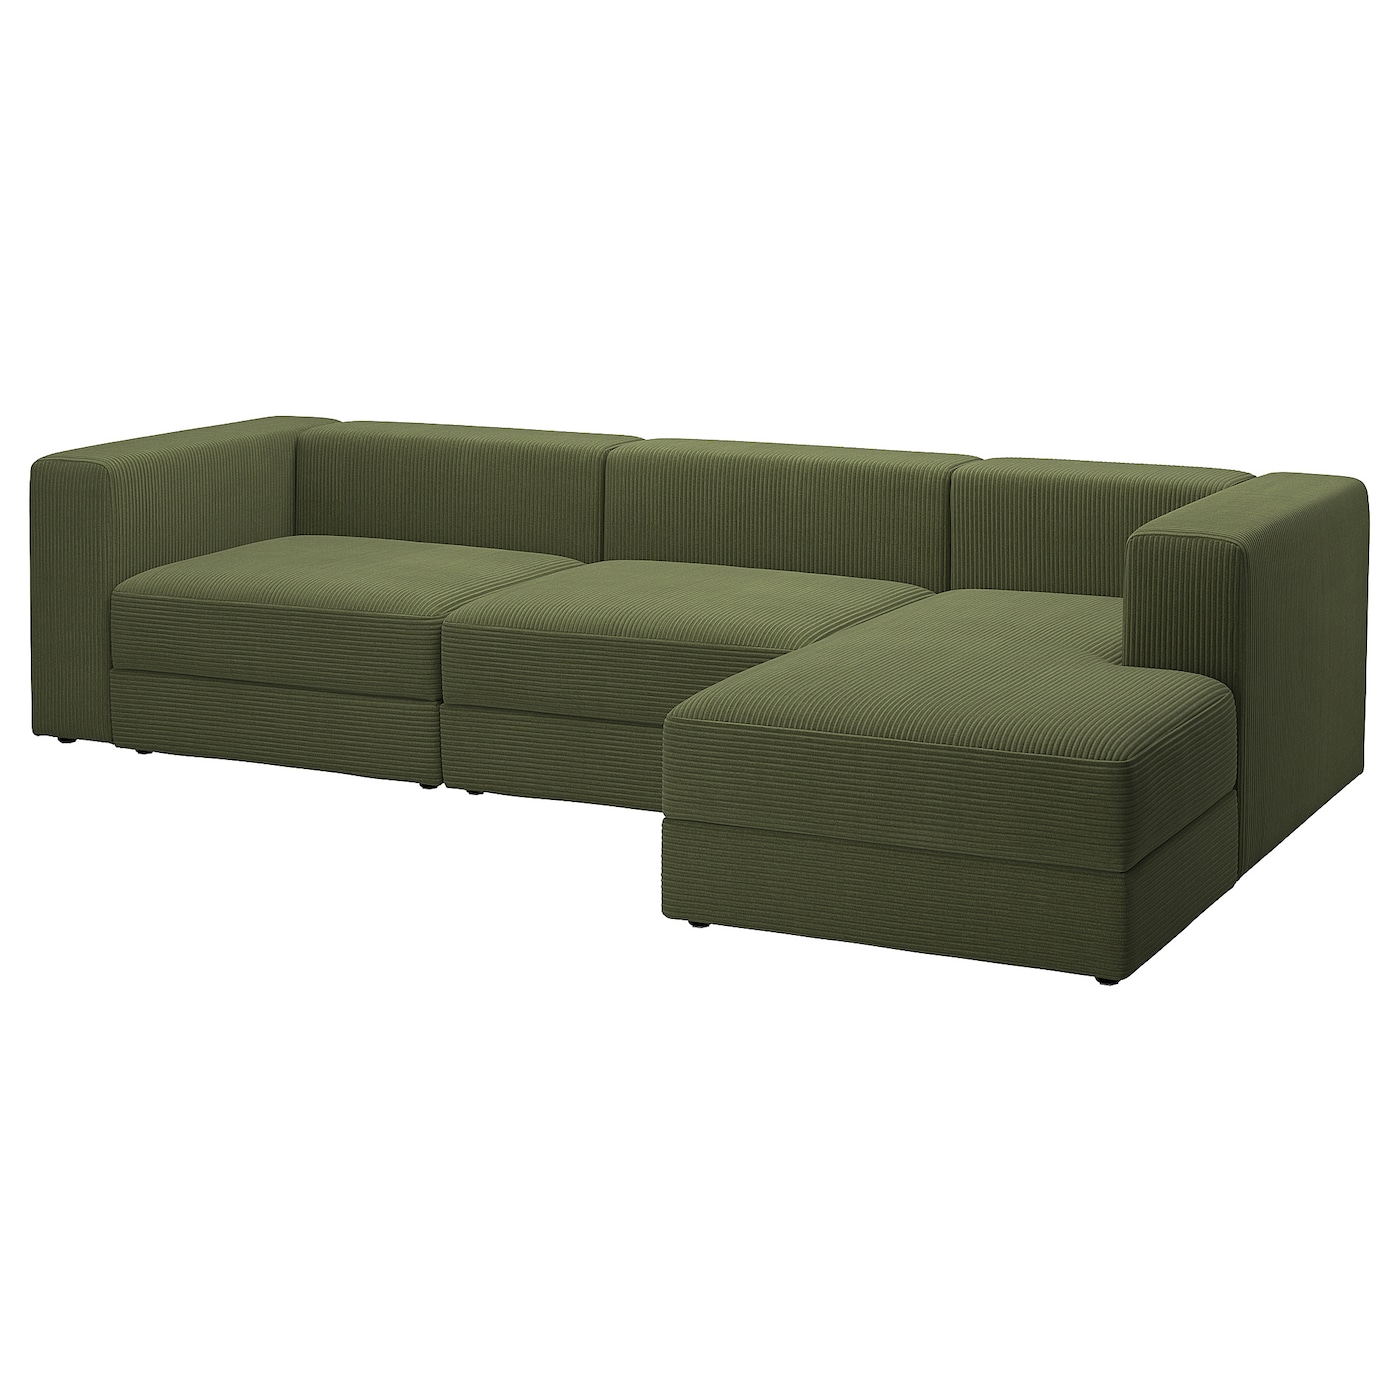 модульный диван ramart design мерсер премиум ultra ivory правый ДЖЭТТЕБО 4-местный диван + диван, правый/Самсала темно-желто-зеленый JÄTTEBO IKEA